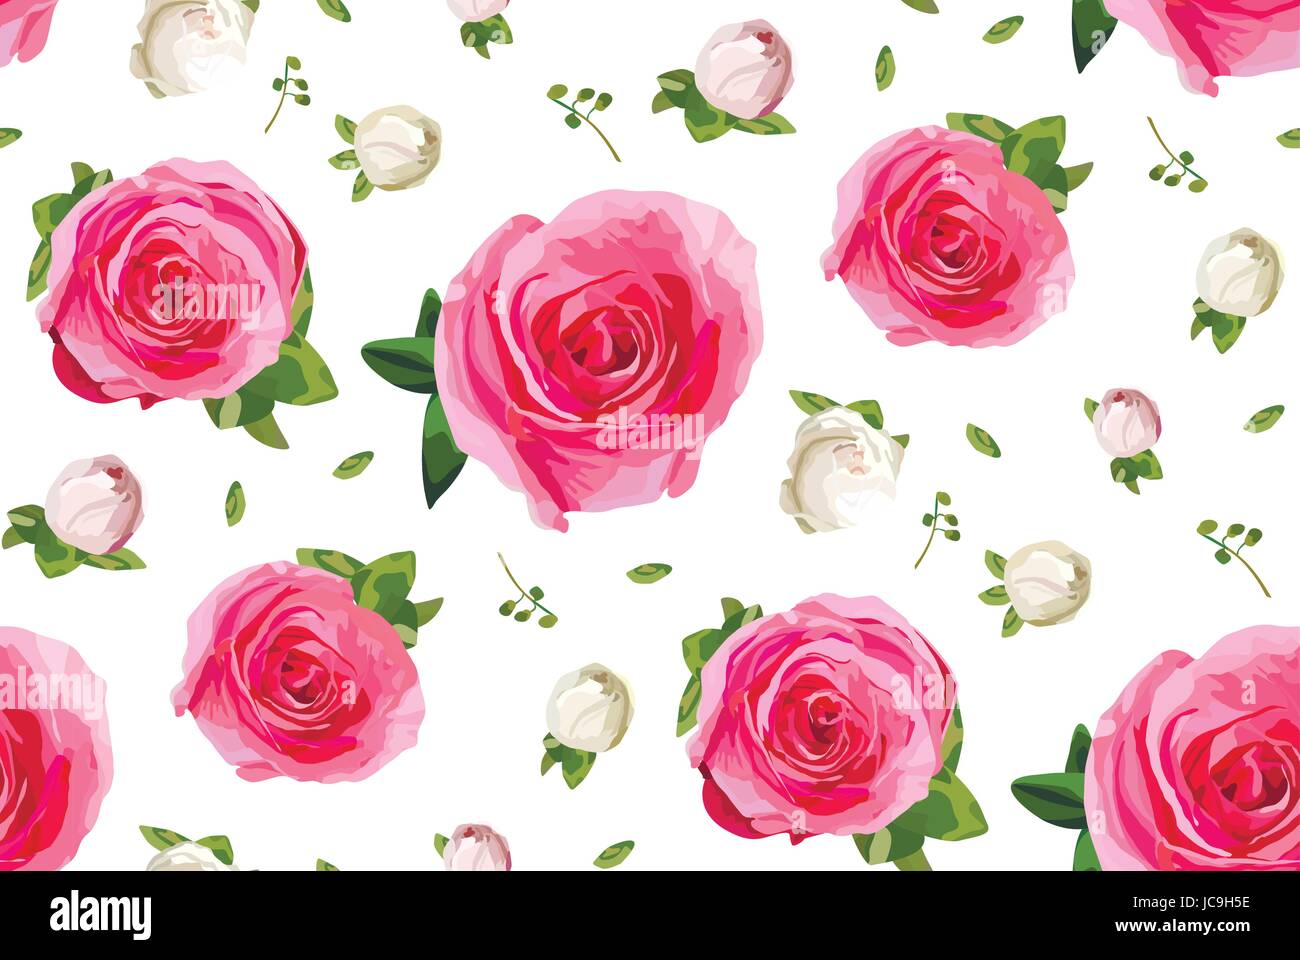 Vintage Rosa Garten rose Knöpfe und Rosen Blumen, tausend Farn dekorative Pflanzen, Blätter Blätter Blumenstrauß Musterdesign Hintergrund, Wallpaper, b Stock Vektor